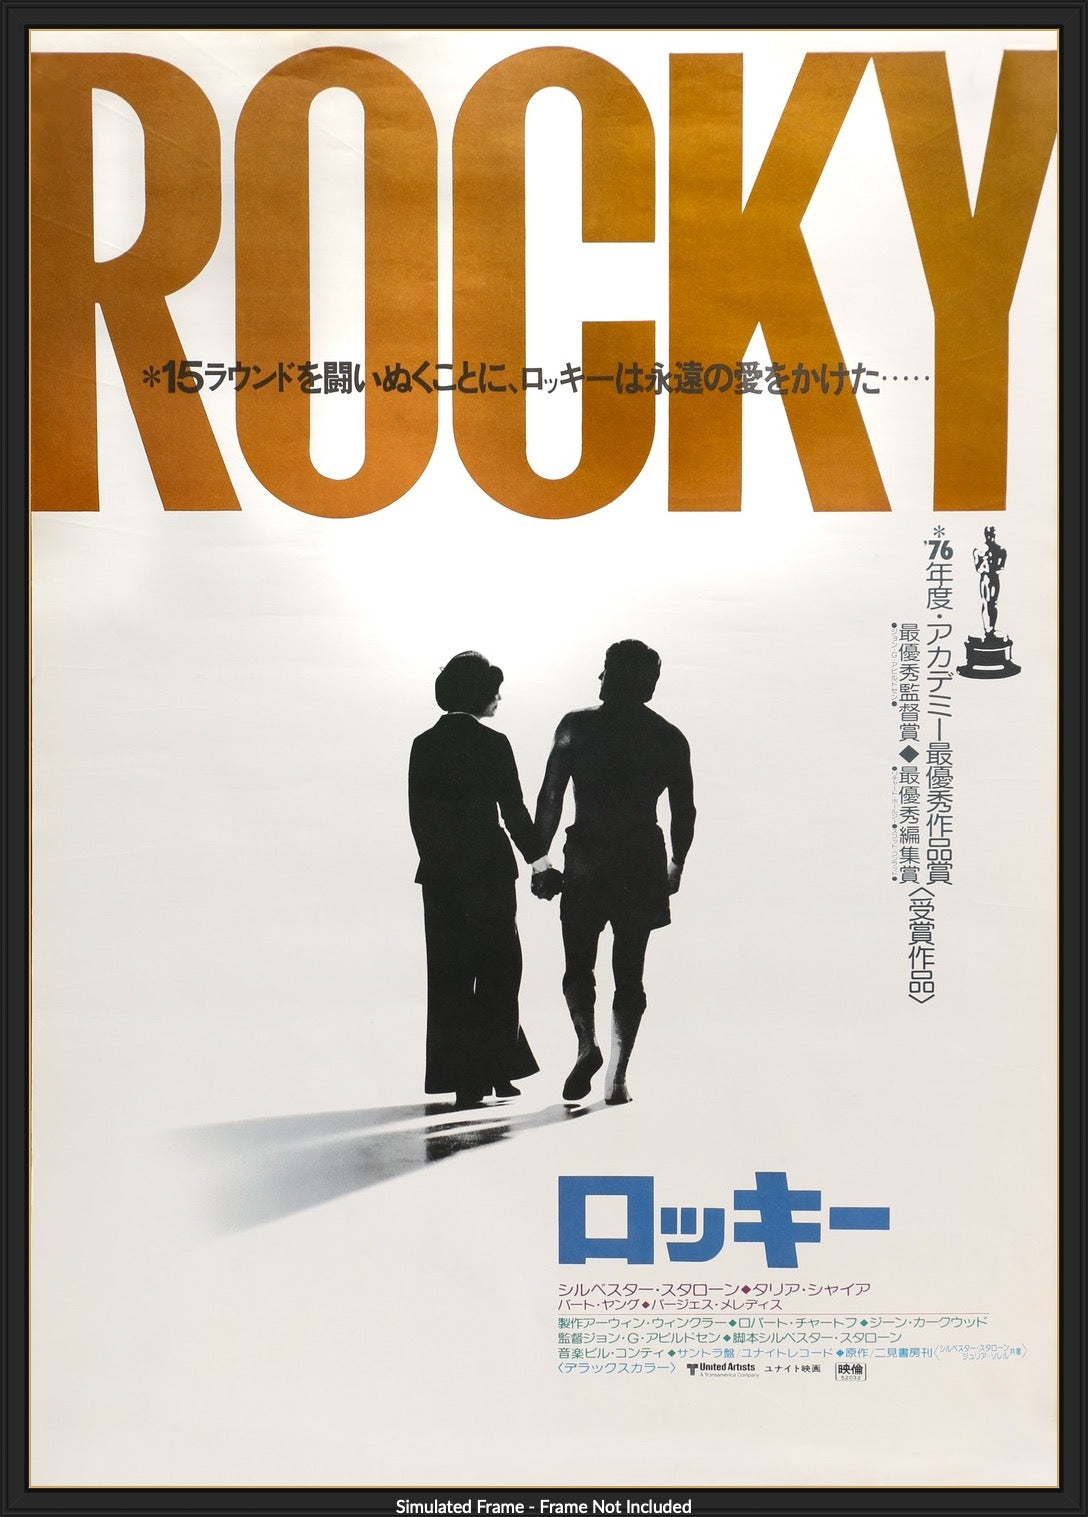 Rocky (1976) original movie poster for sale at Original Film Art